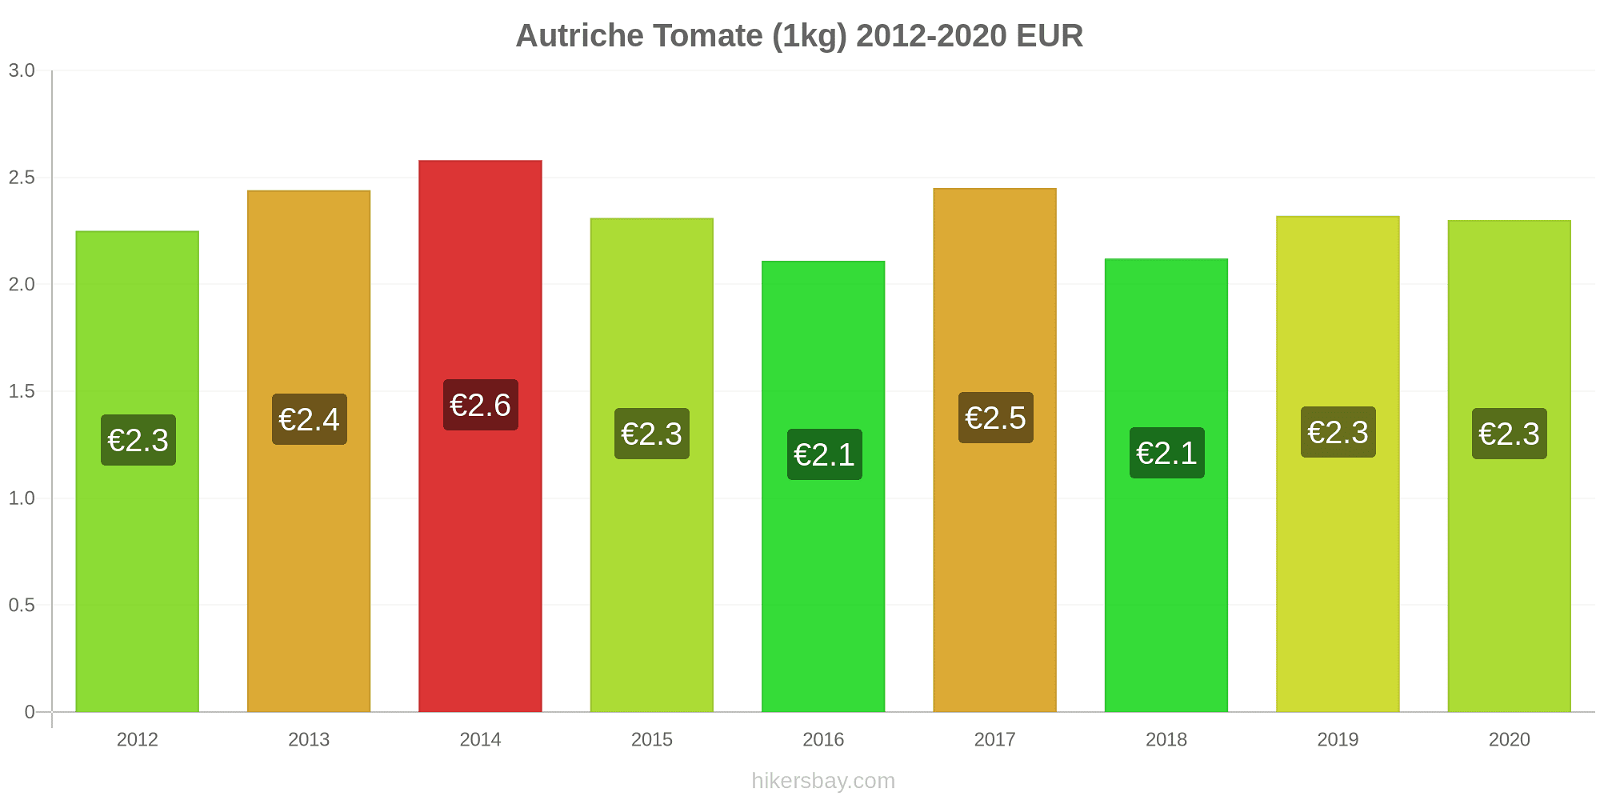 Autriche changements de prix Tomate (1kg) hikersbay.com